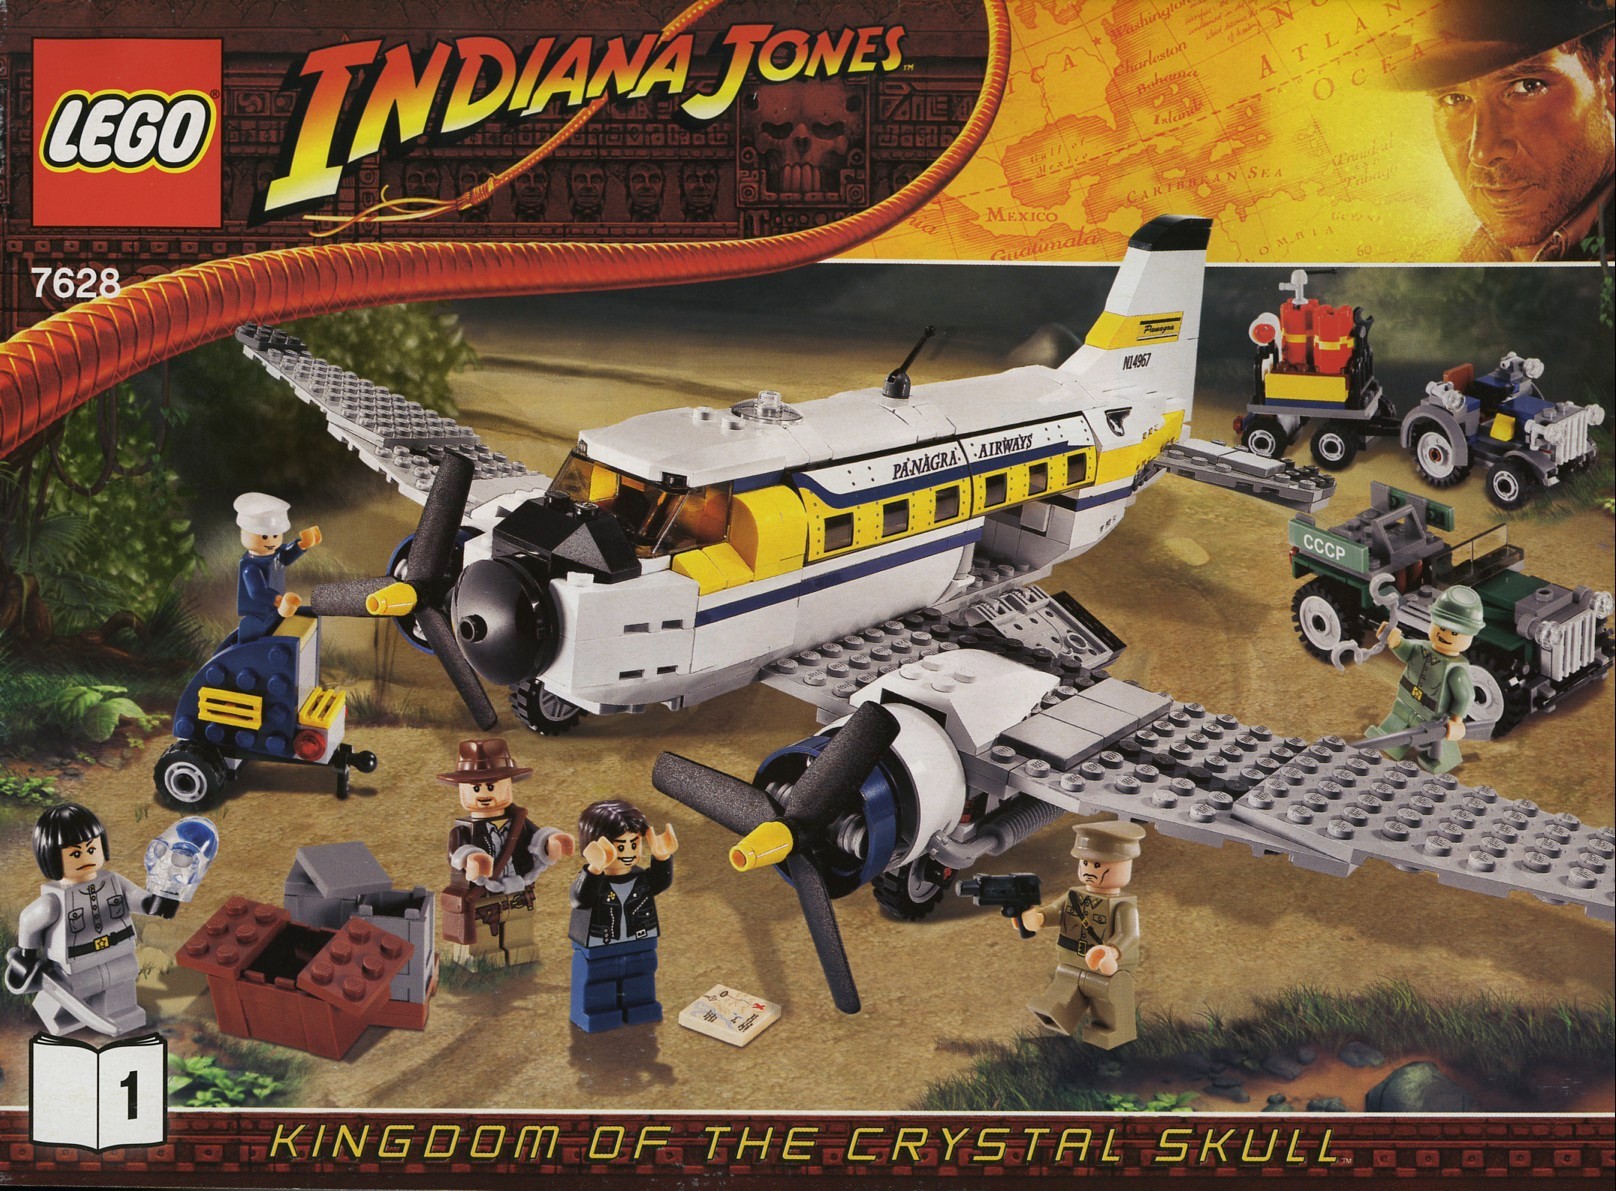 a lego airplane